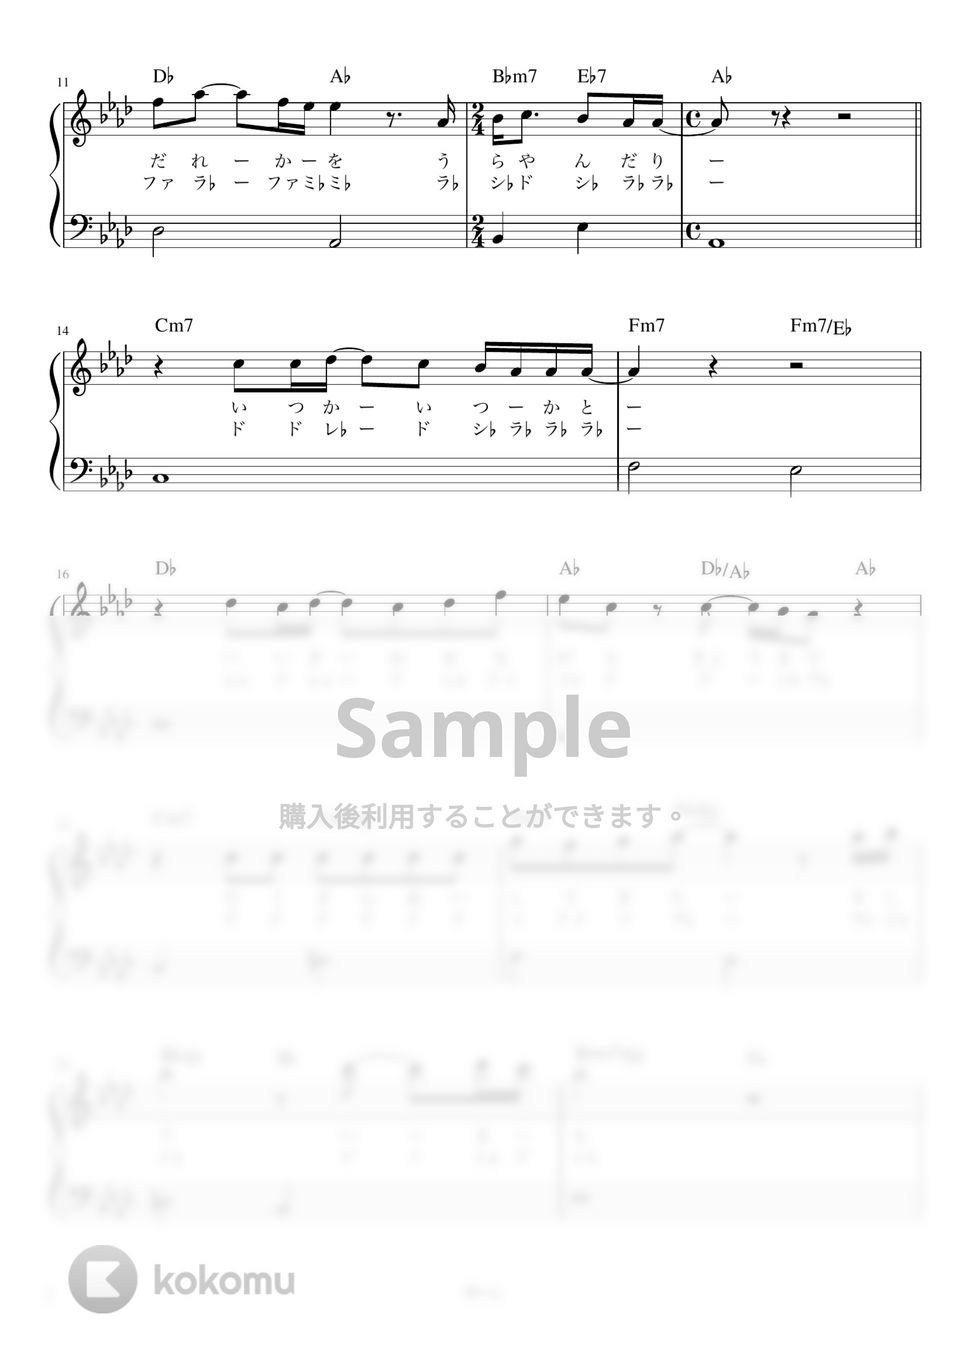 あいみょん - 裸の心 (ピアノ かんたん 歌詞付き ドレミ付き 初心者) by piano.tokyo